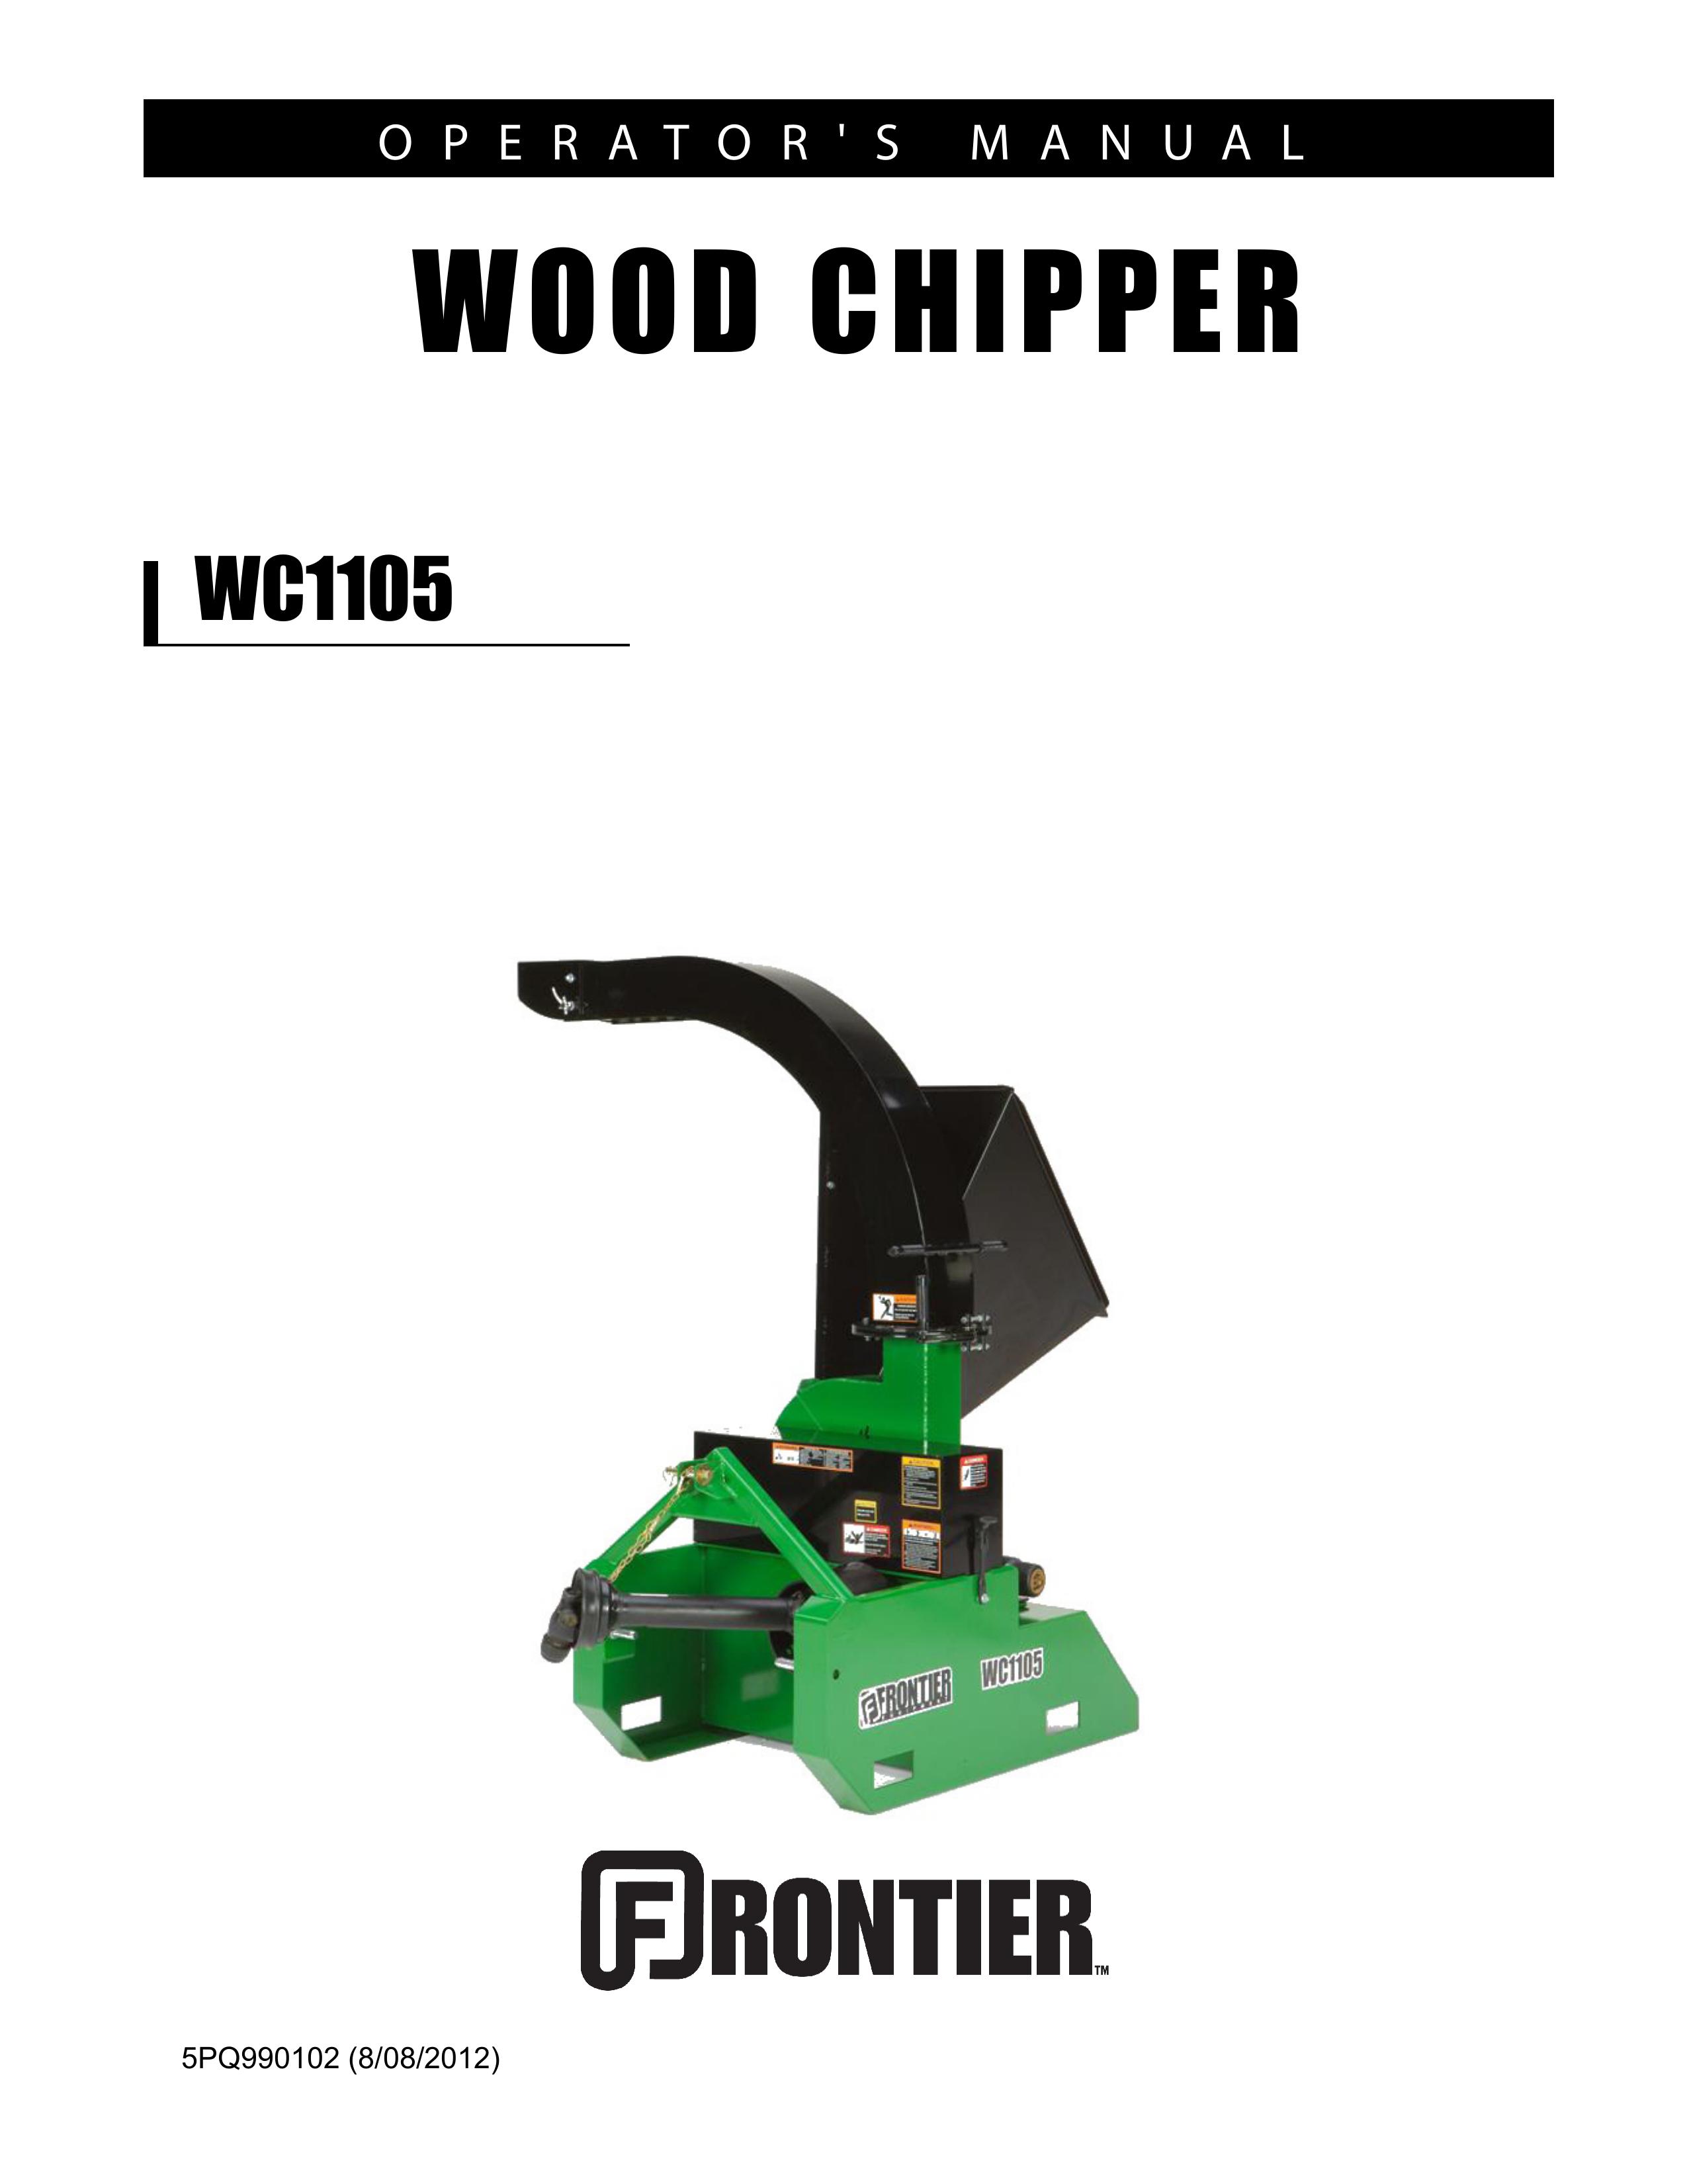 John Deere WC1105 Chipper User Manual